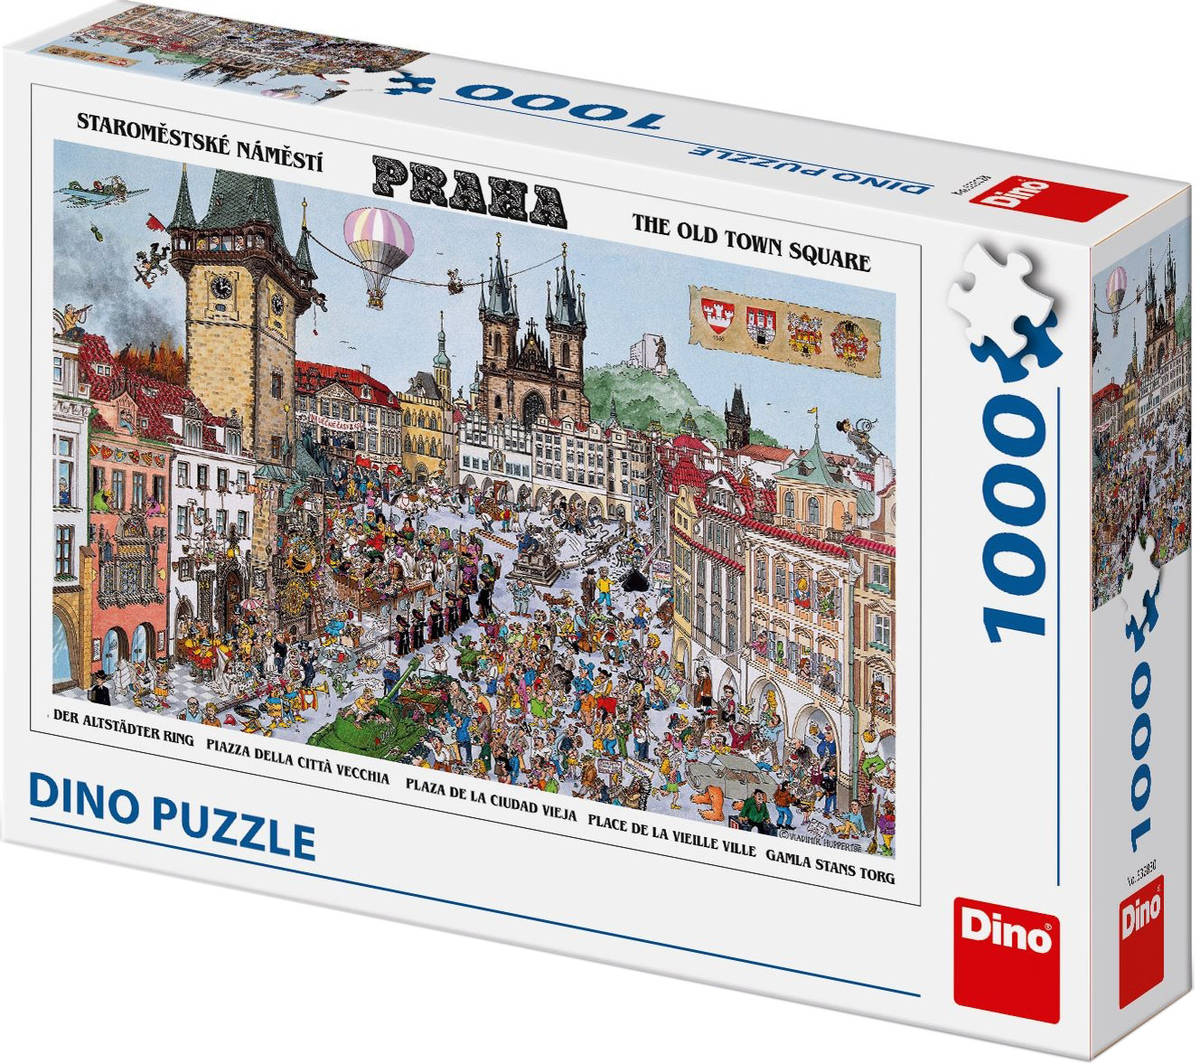 DINO Puzzle Staroměstské náměstí 66x47cm skládačka 1000 dílků